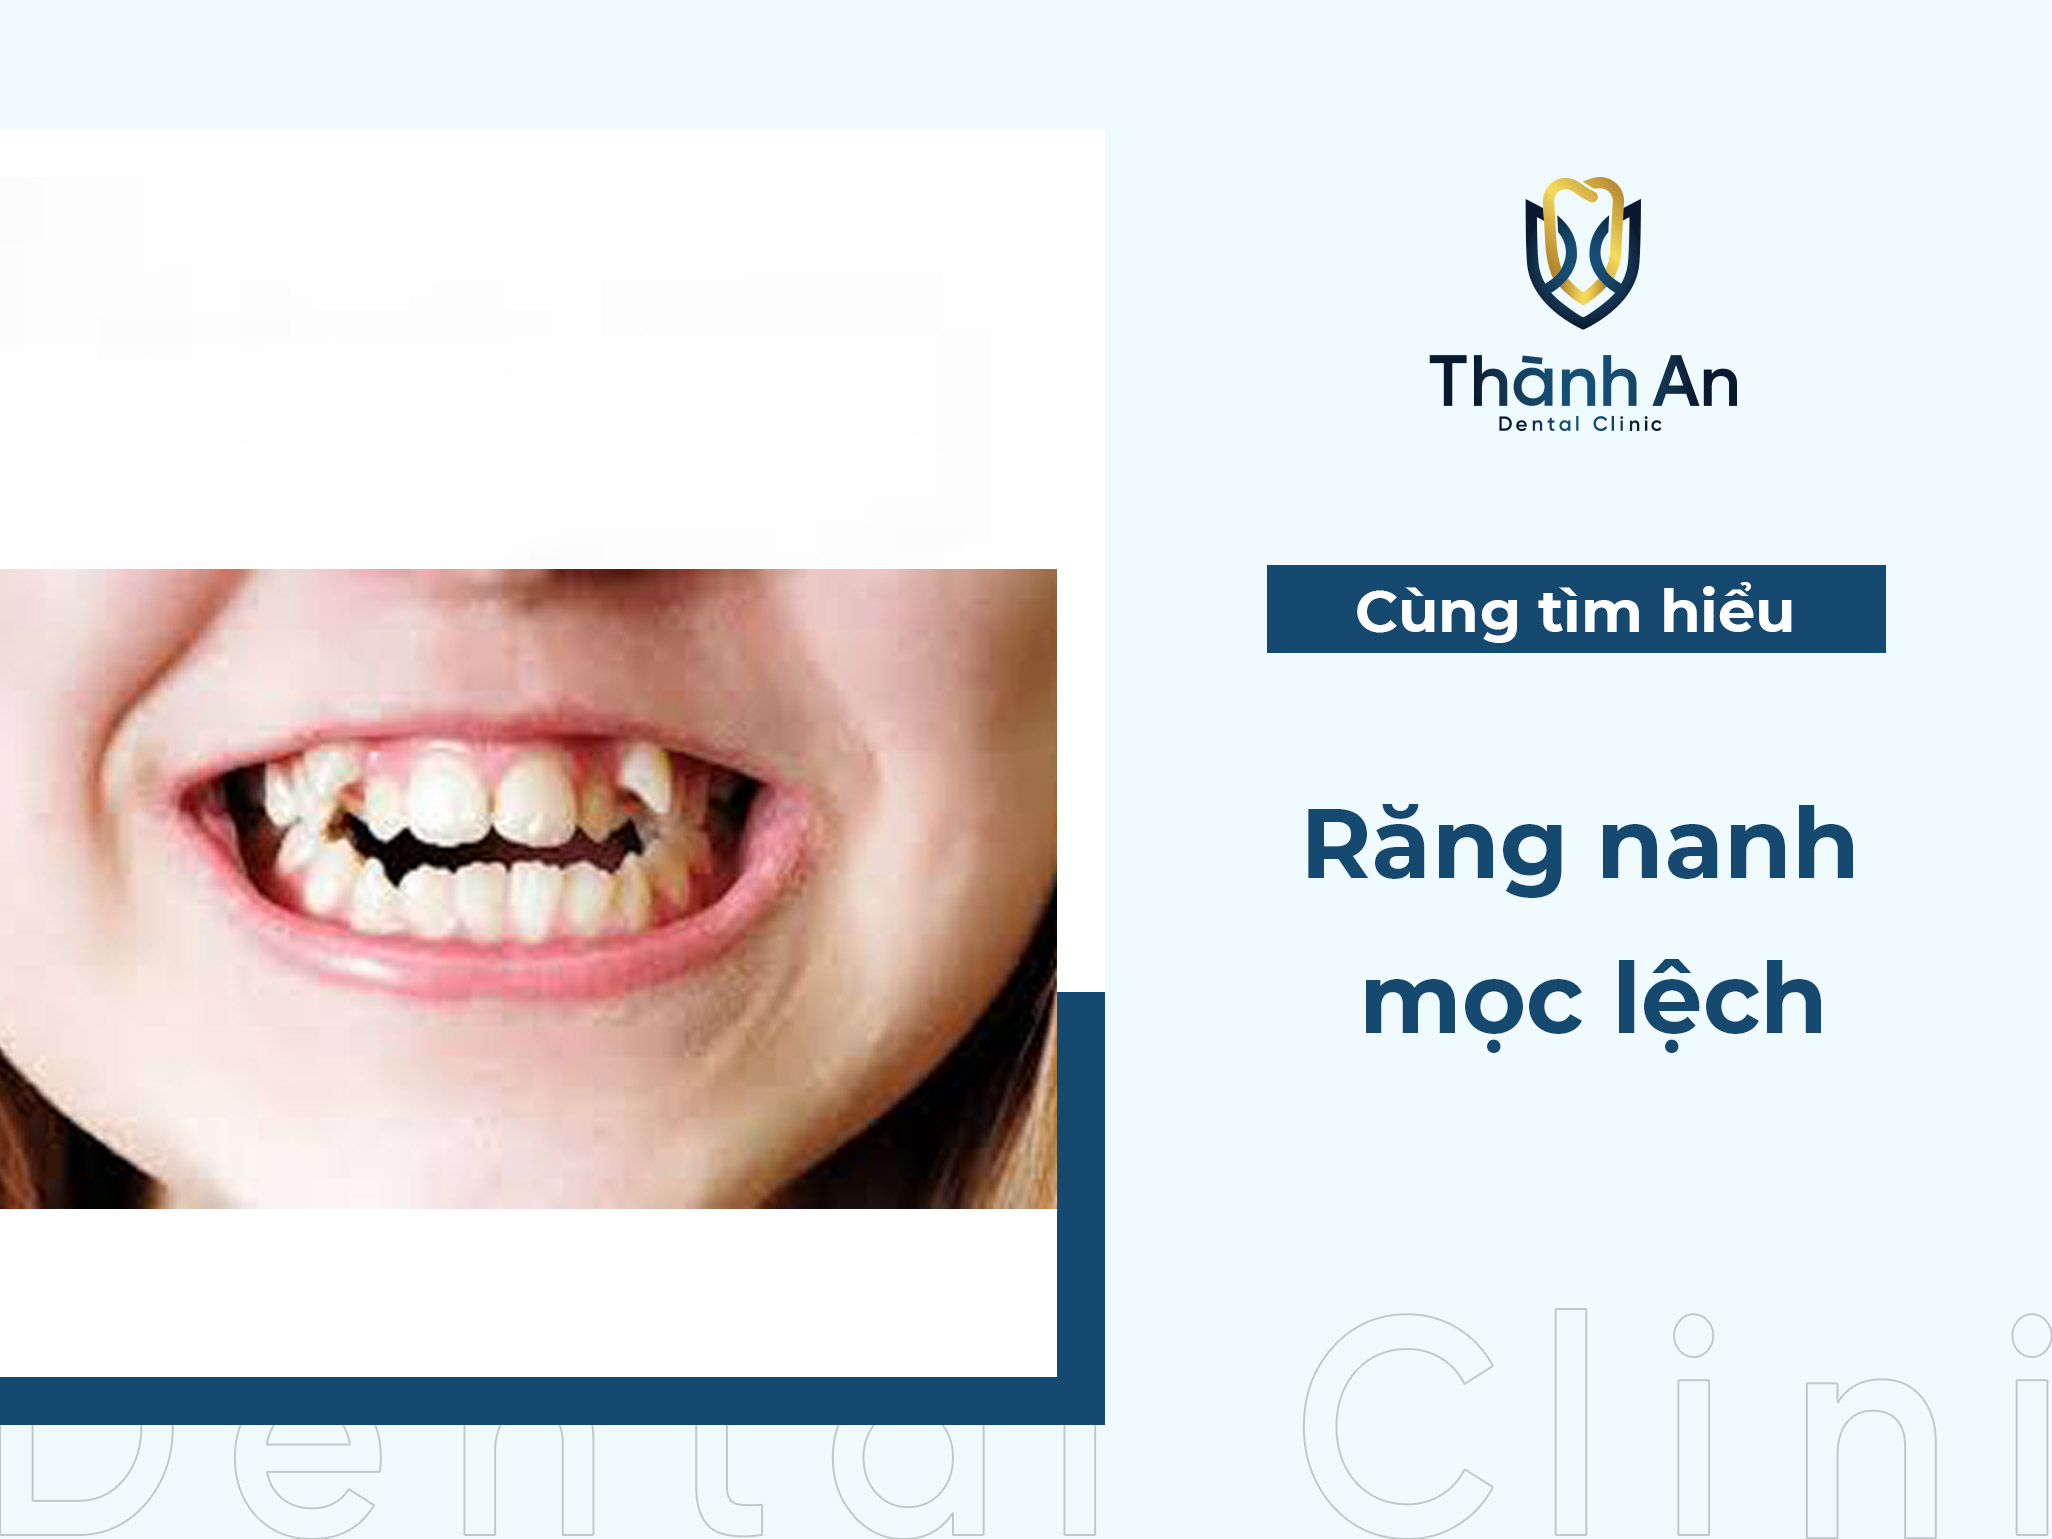 Răng nanh mọc lệch ảnh hưởng đến sức khỏe răng miệng không?